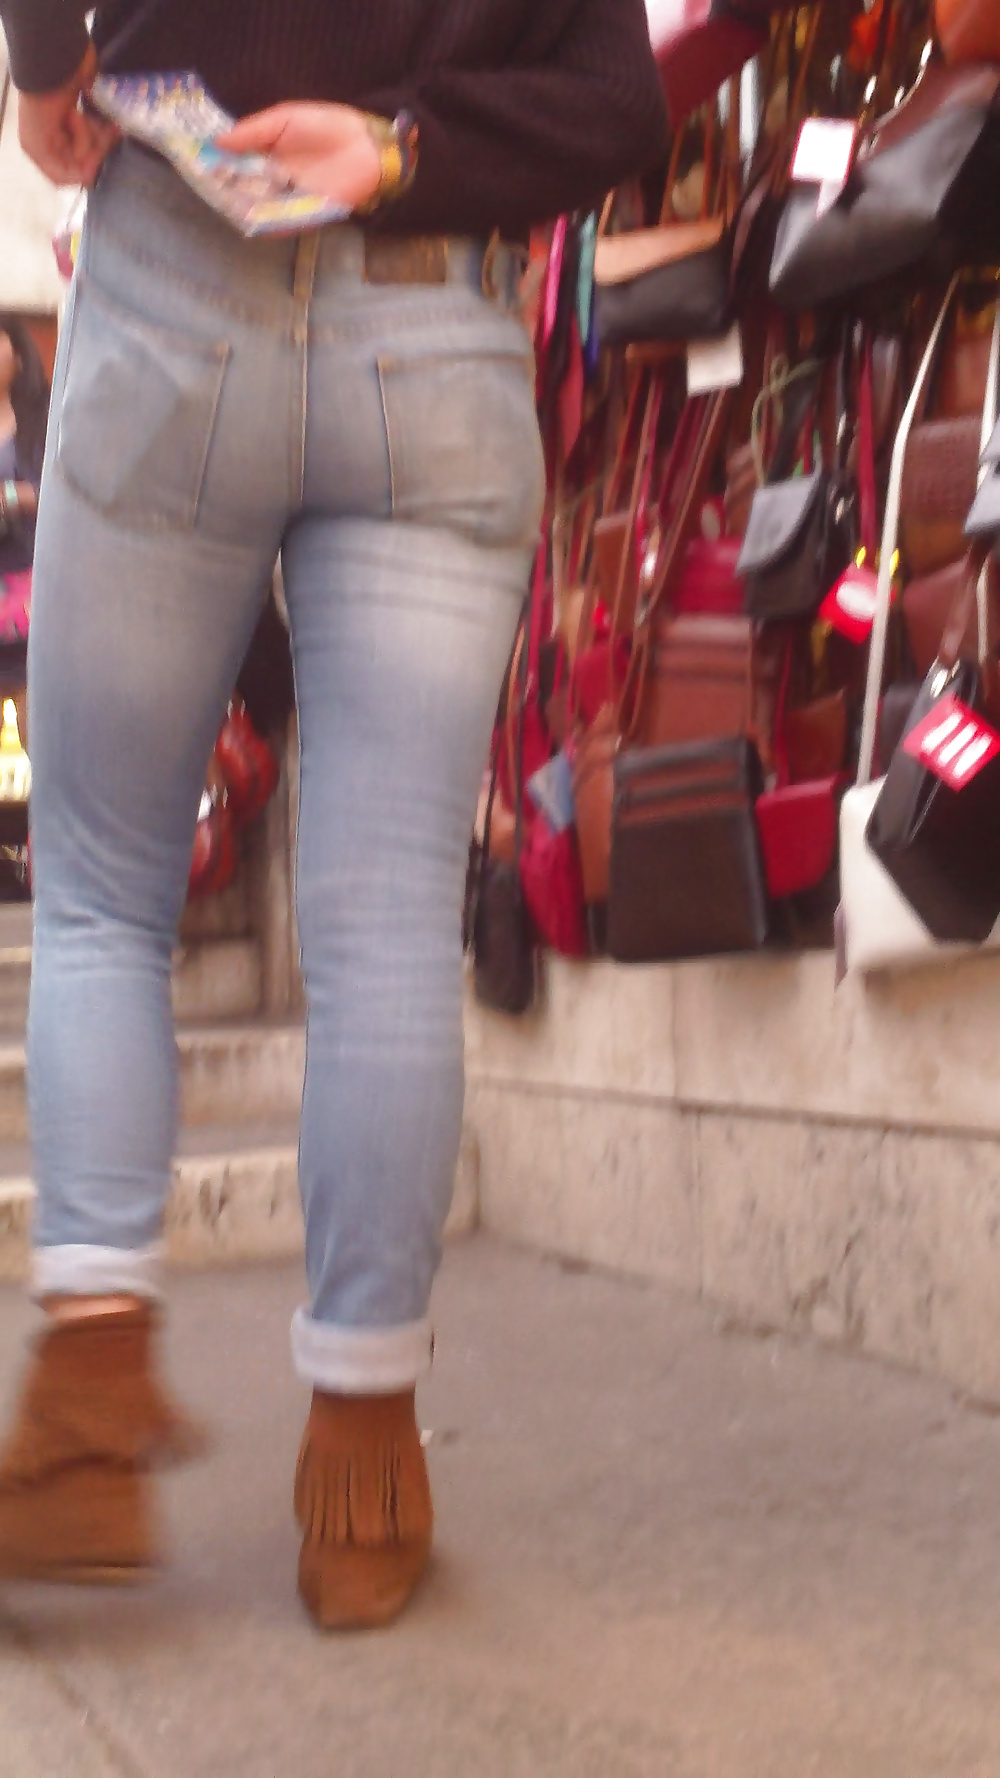 Popular teen girls ass & butt in jeans Part 6 #32009857